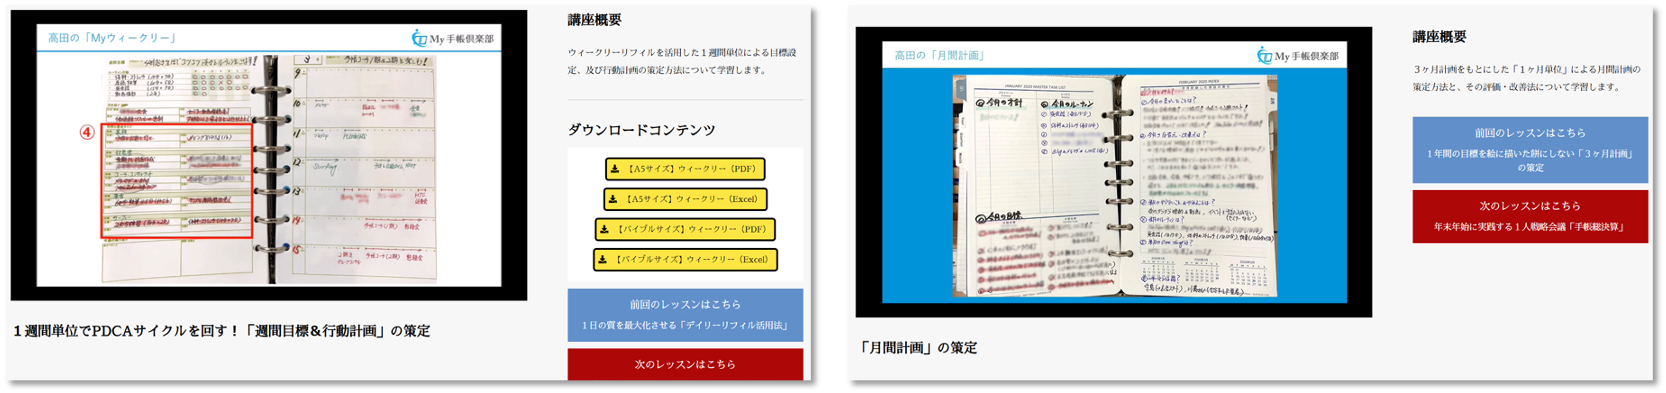 高田式手帳をゼロから習得する 実践的12ステップ 一般社団法人日本手帳マネージメント協会